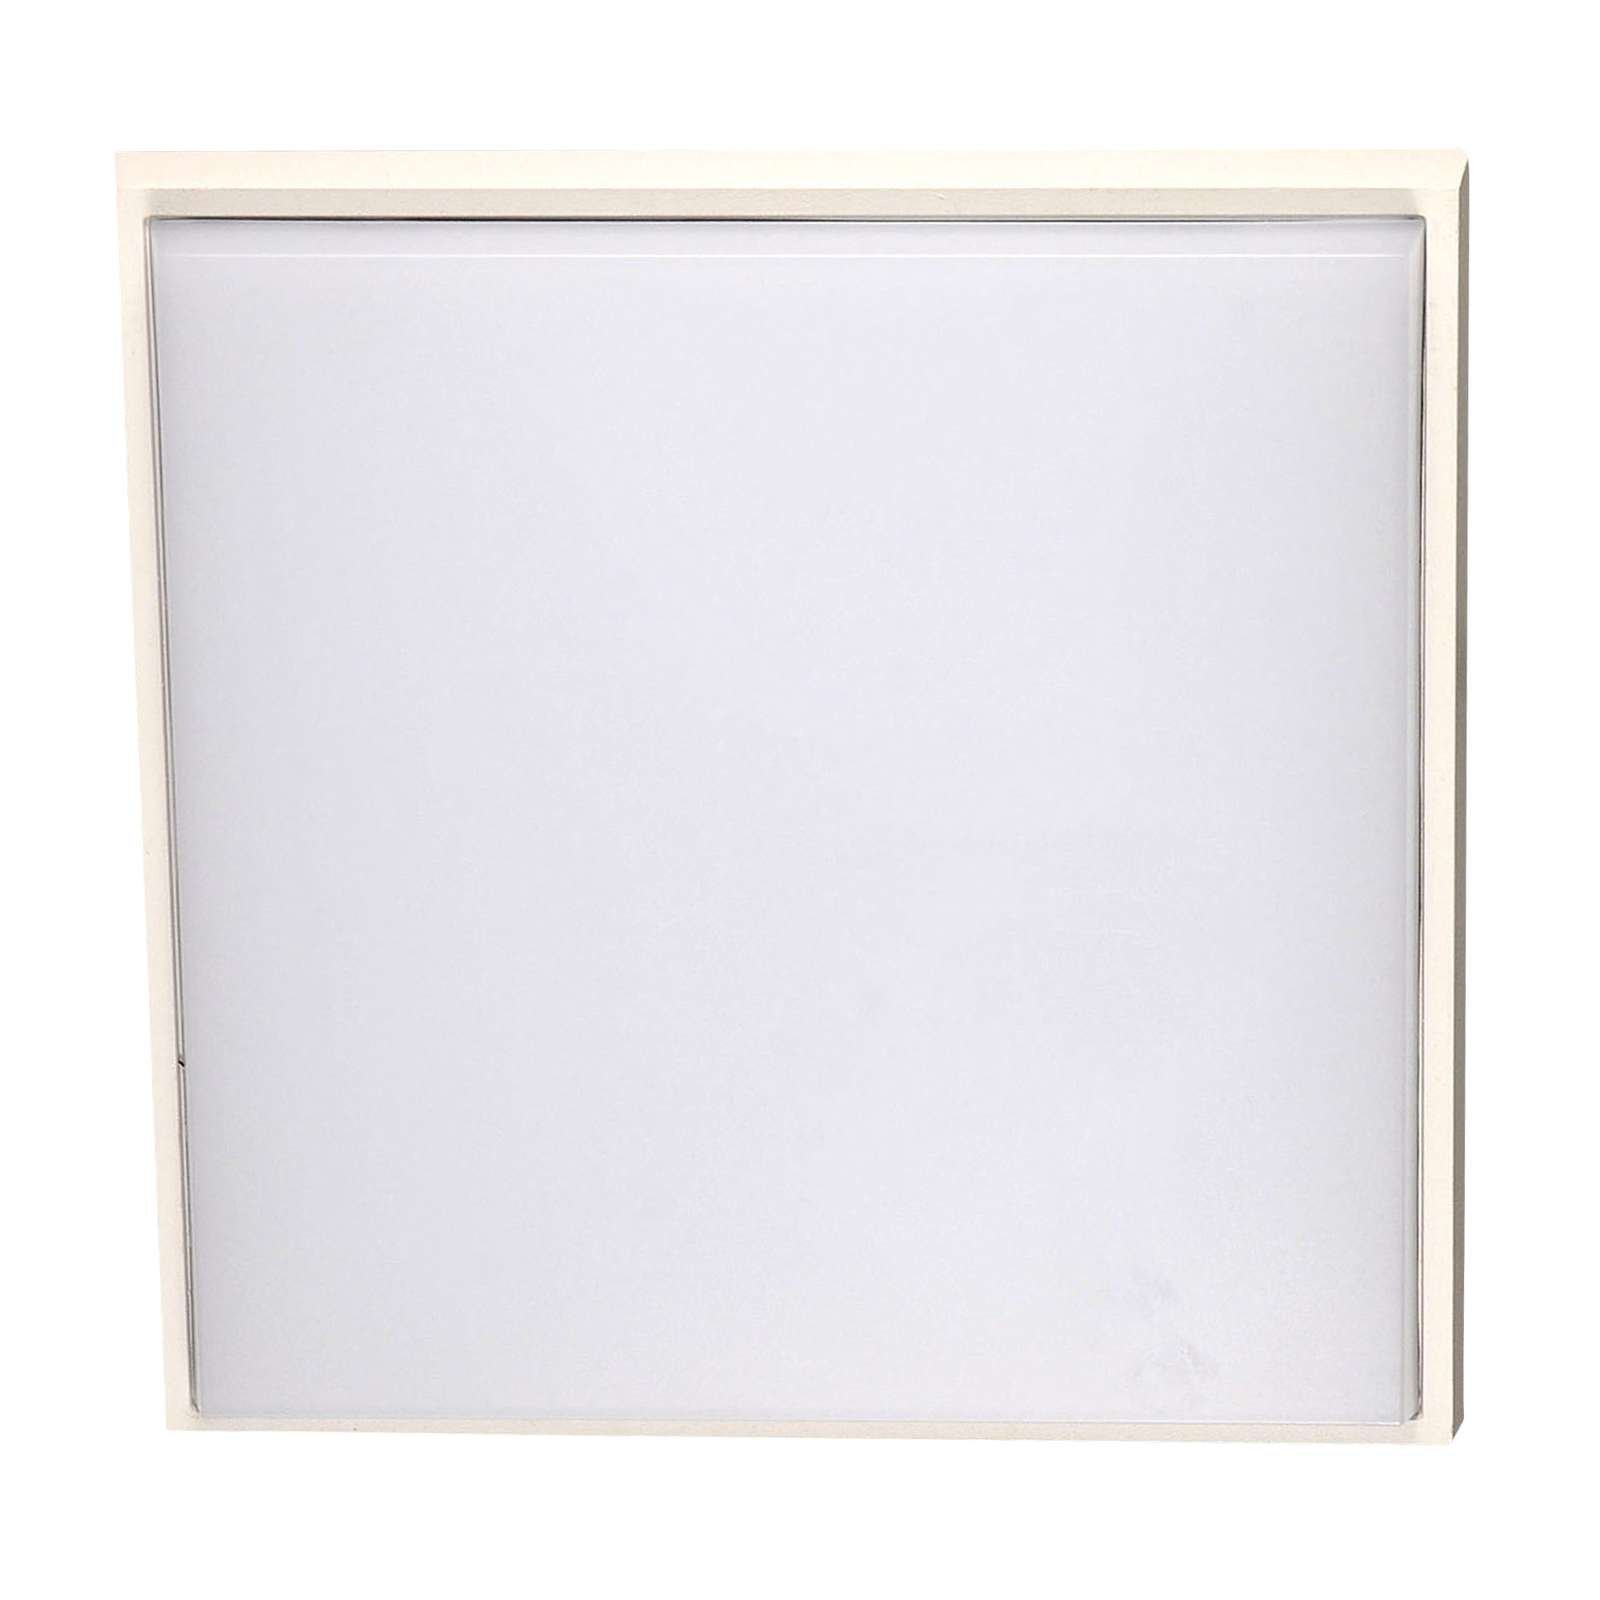 Desdy plafonnier d'extérieur LED, 30x30 cm, blanc